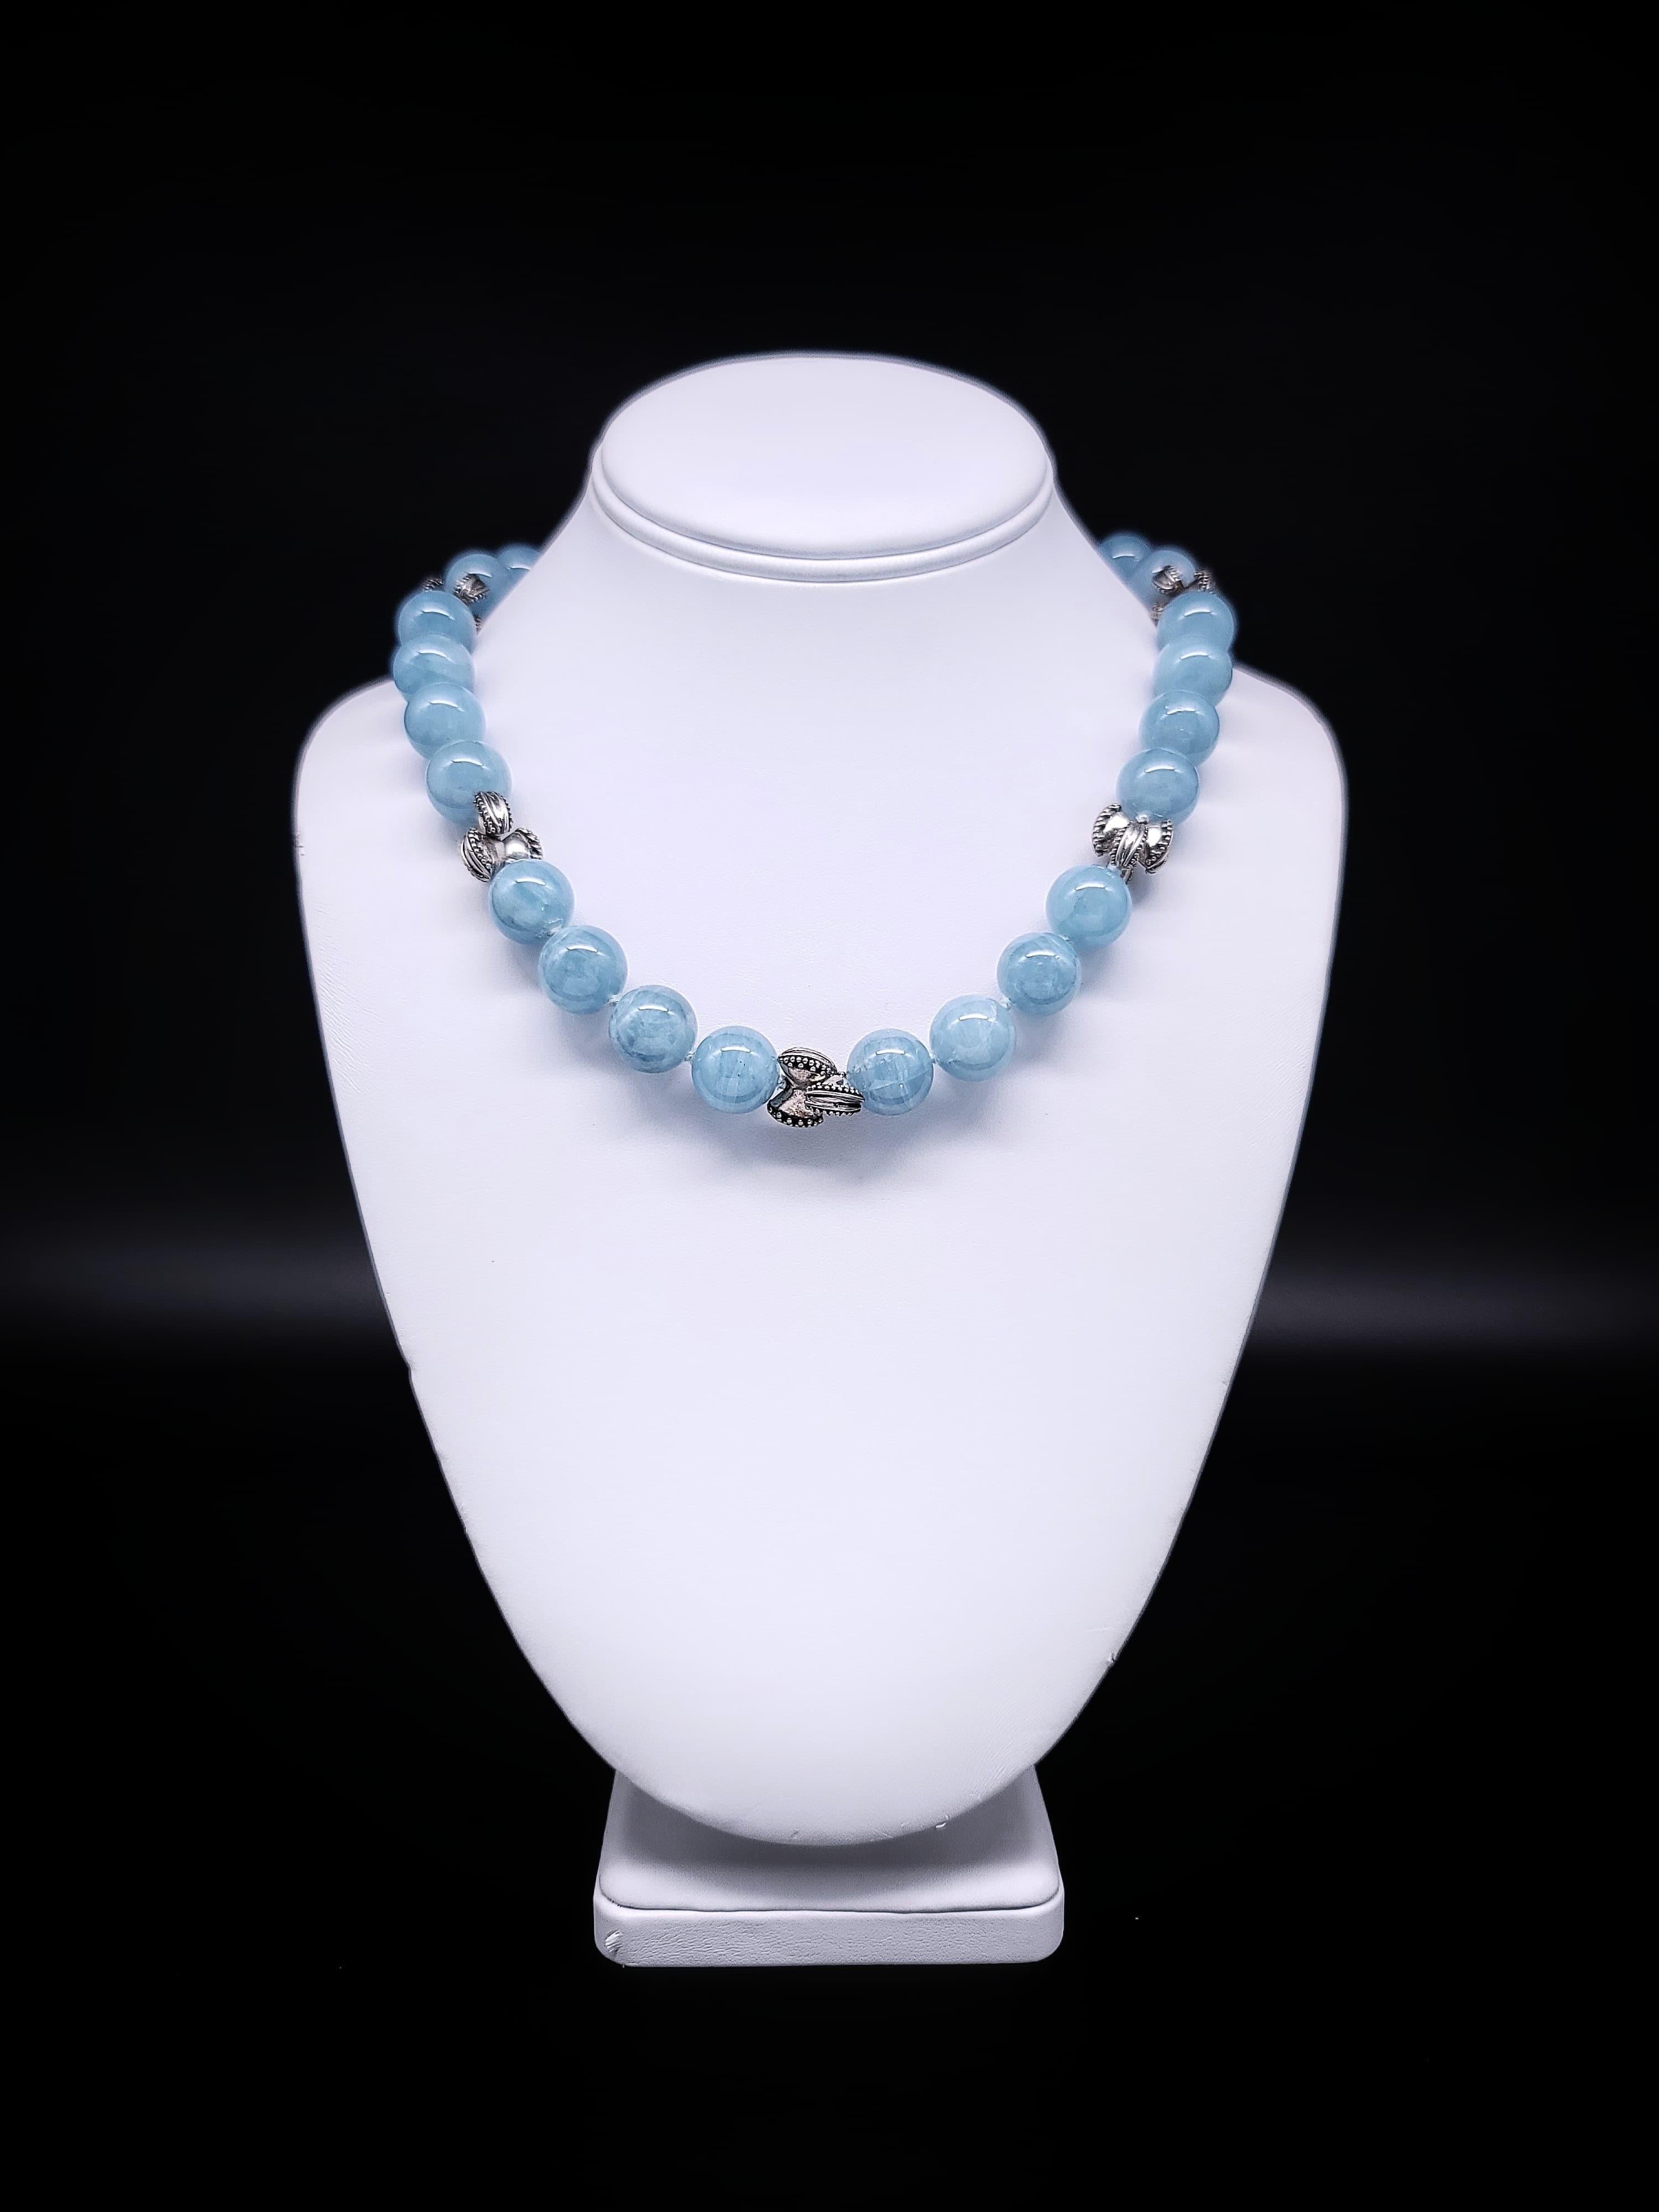 Bead A.Jeschel Beautiful Aquamarine necklace. For Sale